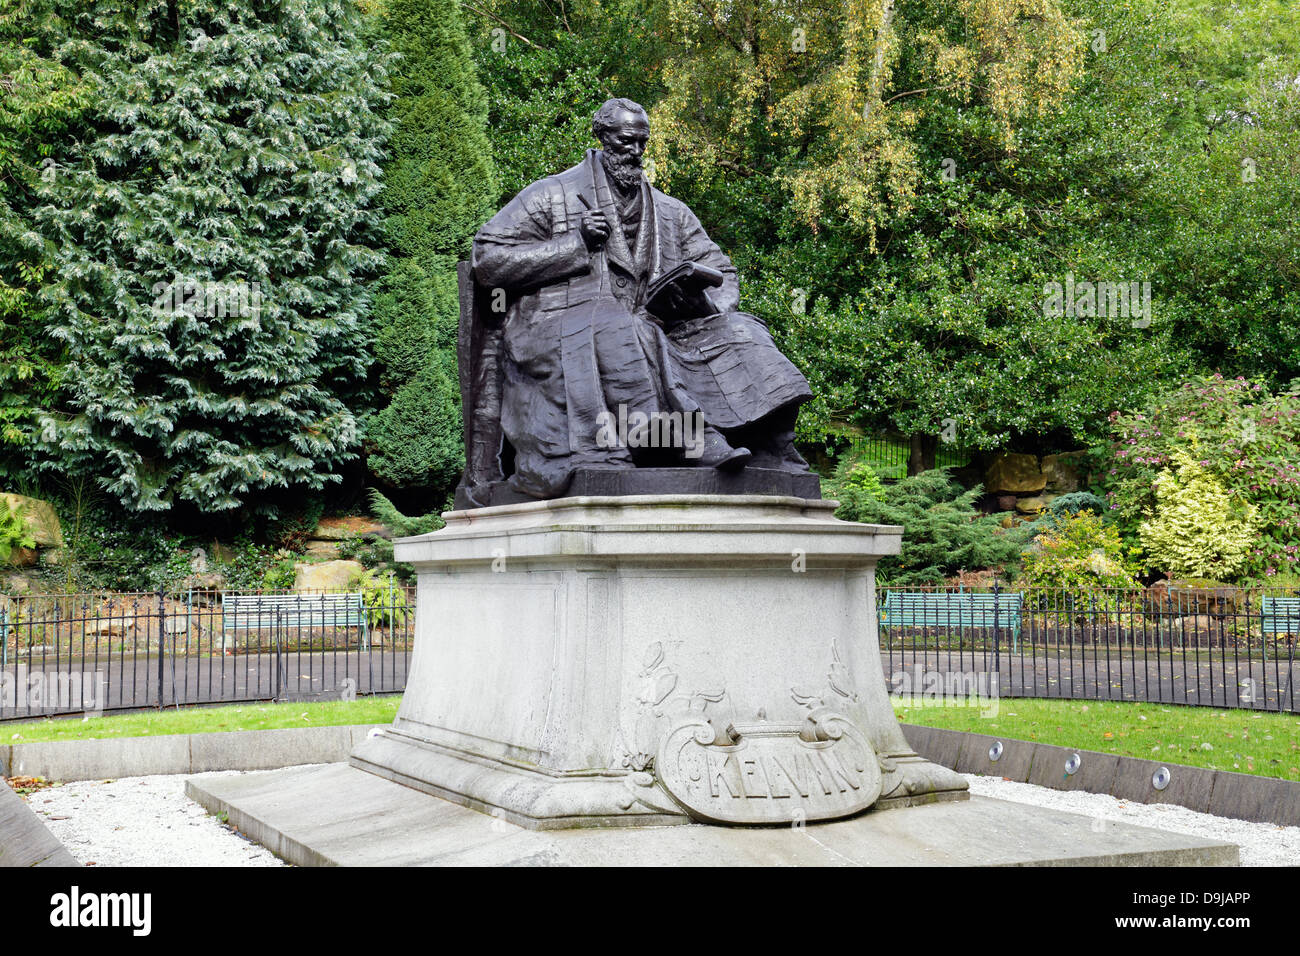 Un monumento de bronce del físico y matemático Sir William Thomson, Barón Kelvin de Largs, Kelvingrove Park, Glasgow, Escocia Foto de stock